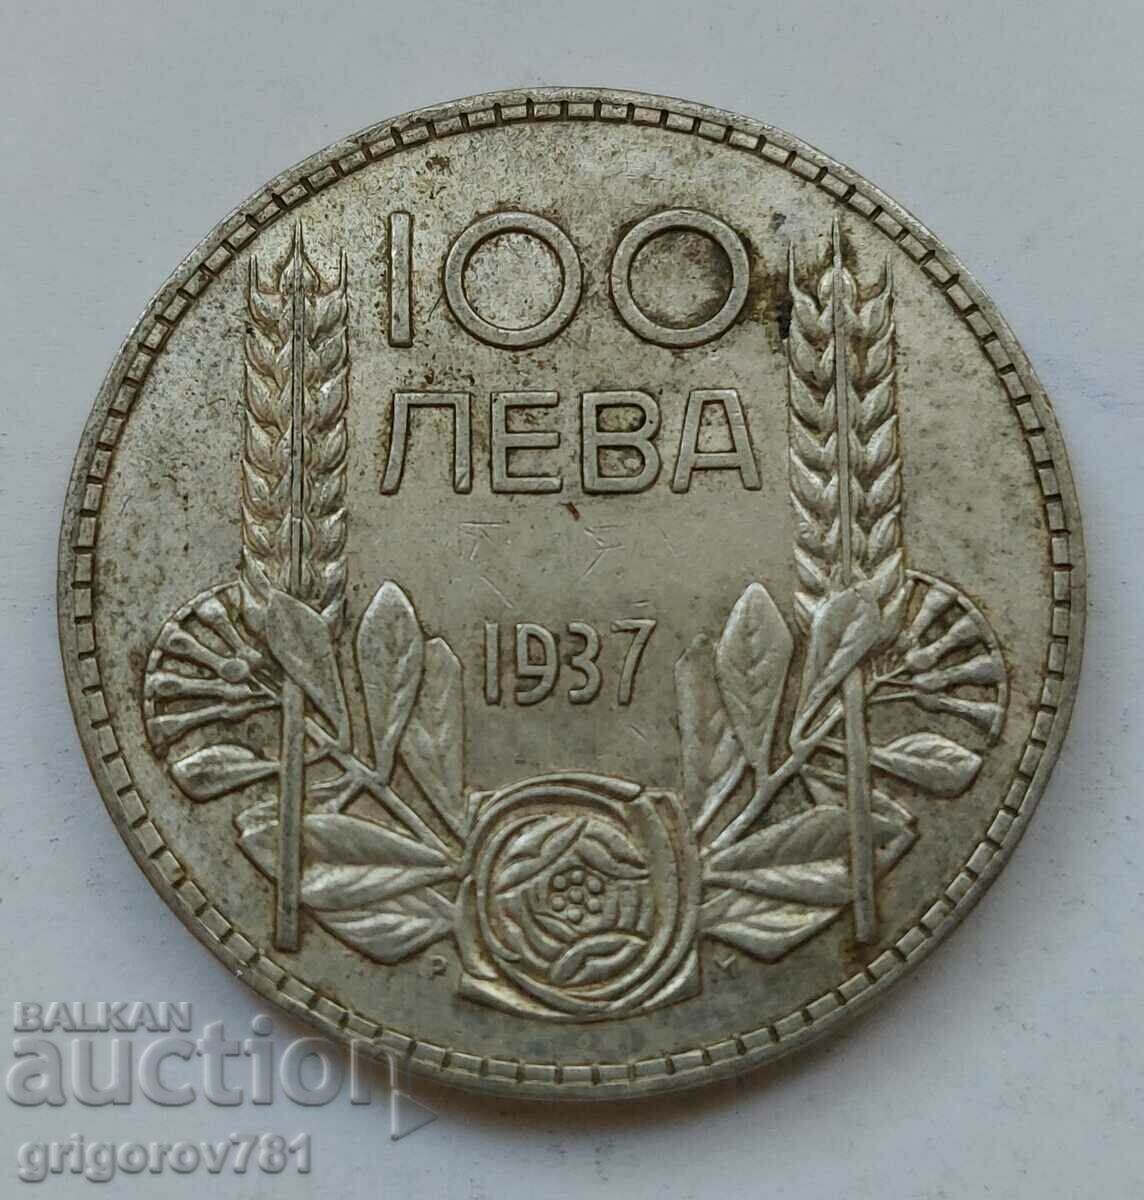 Ασήμι 100 λέβα Βουλγαρία 1937 - ασημένιο νόμισμα #110